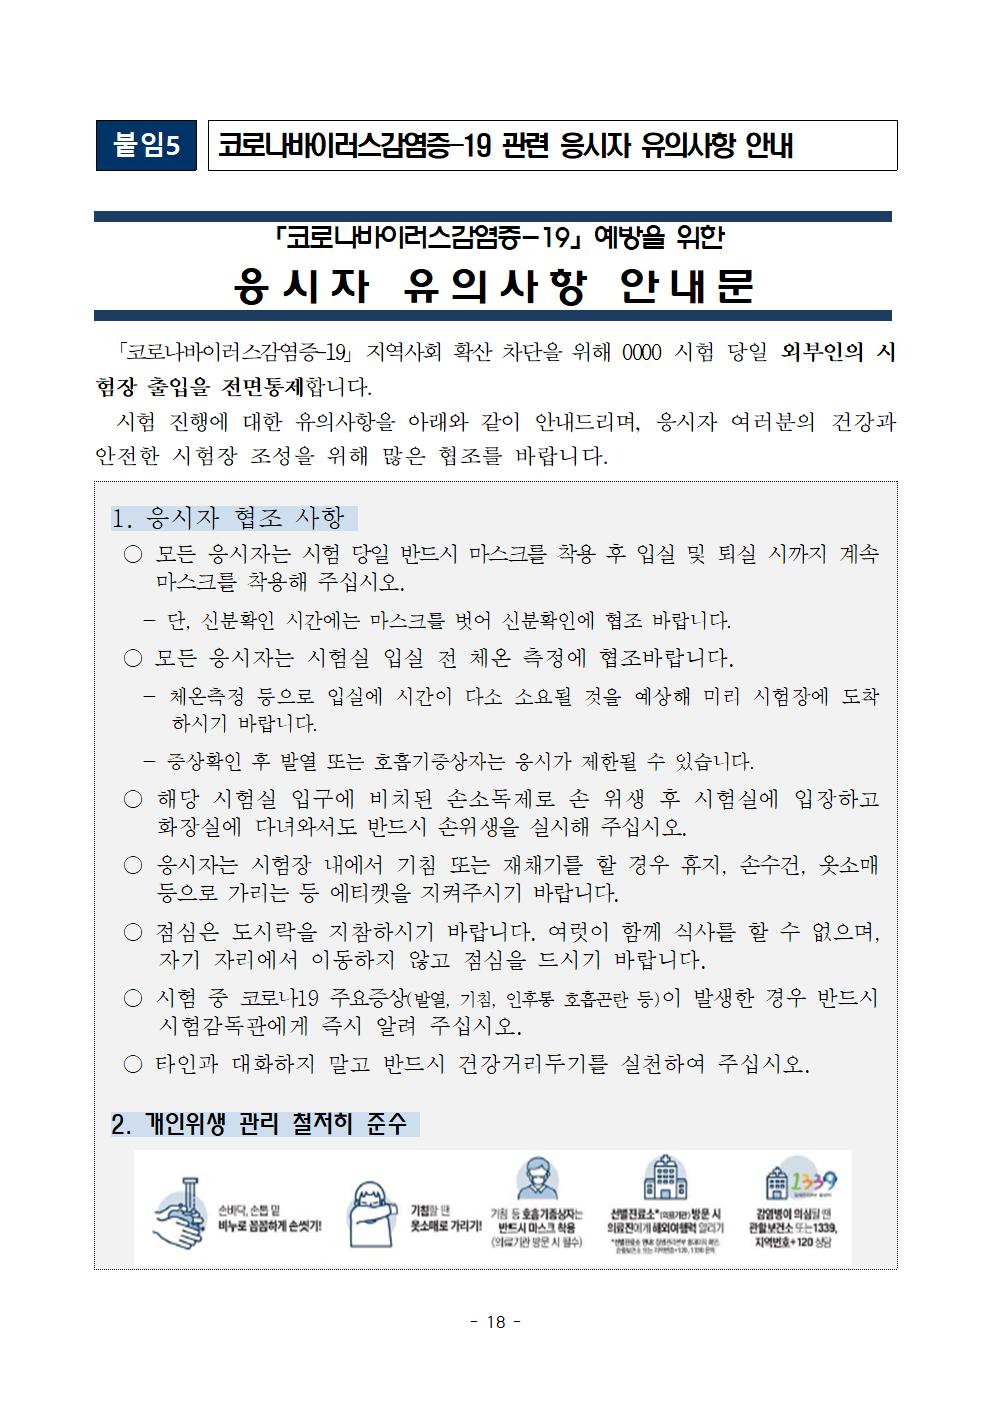 2021학년도 학교별 입학전형 안전관리 계획_한국게임과학고(홈페이지게시)020